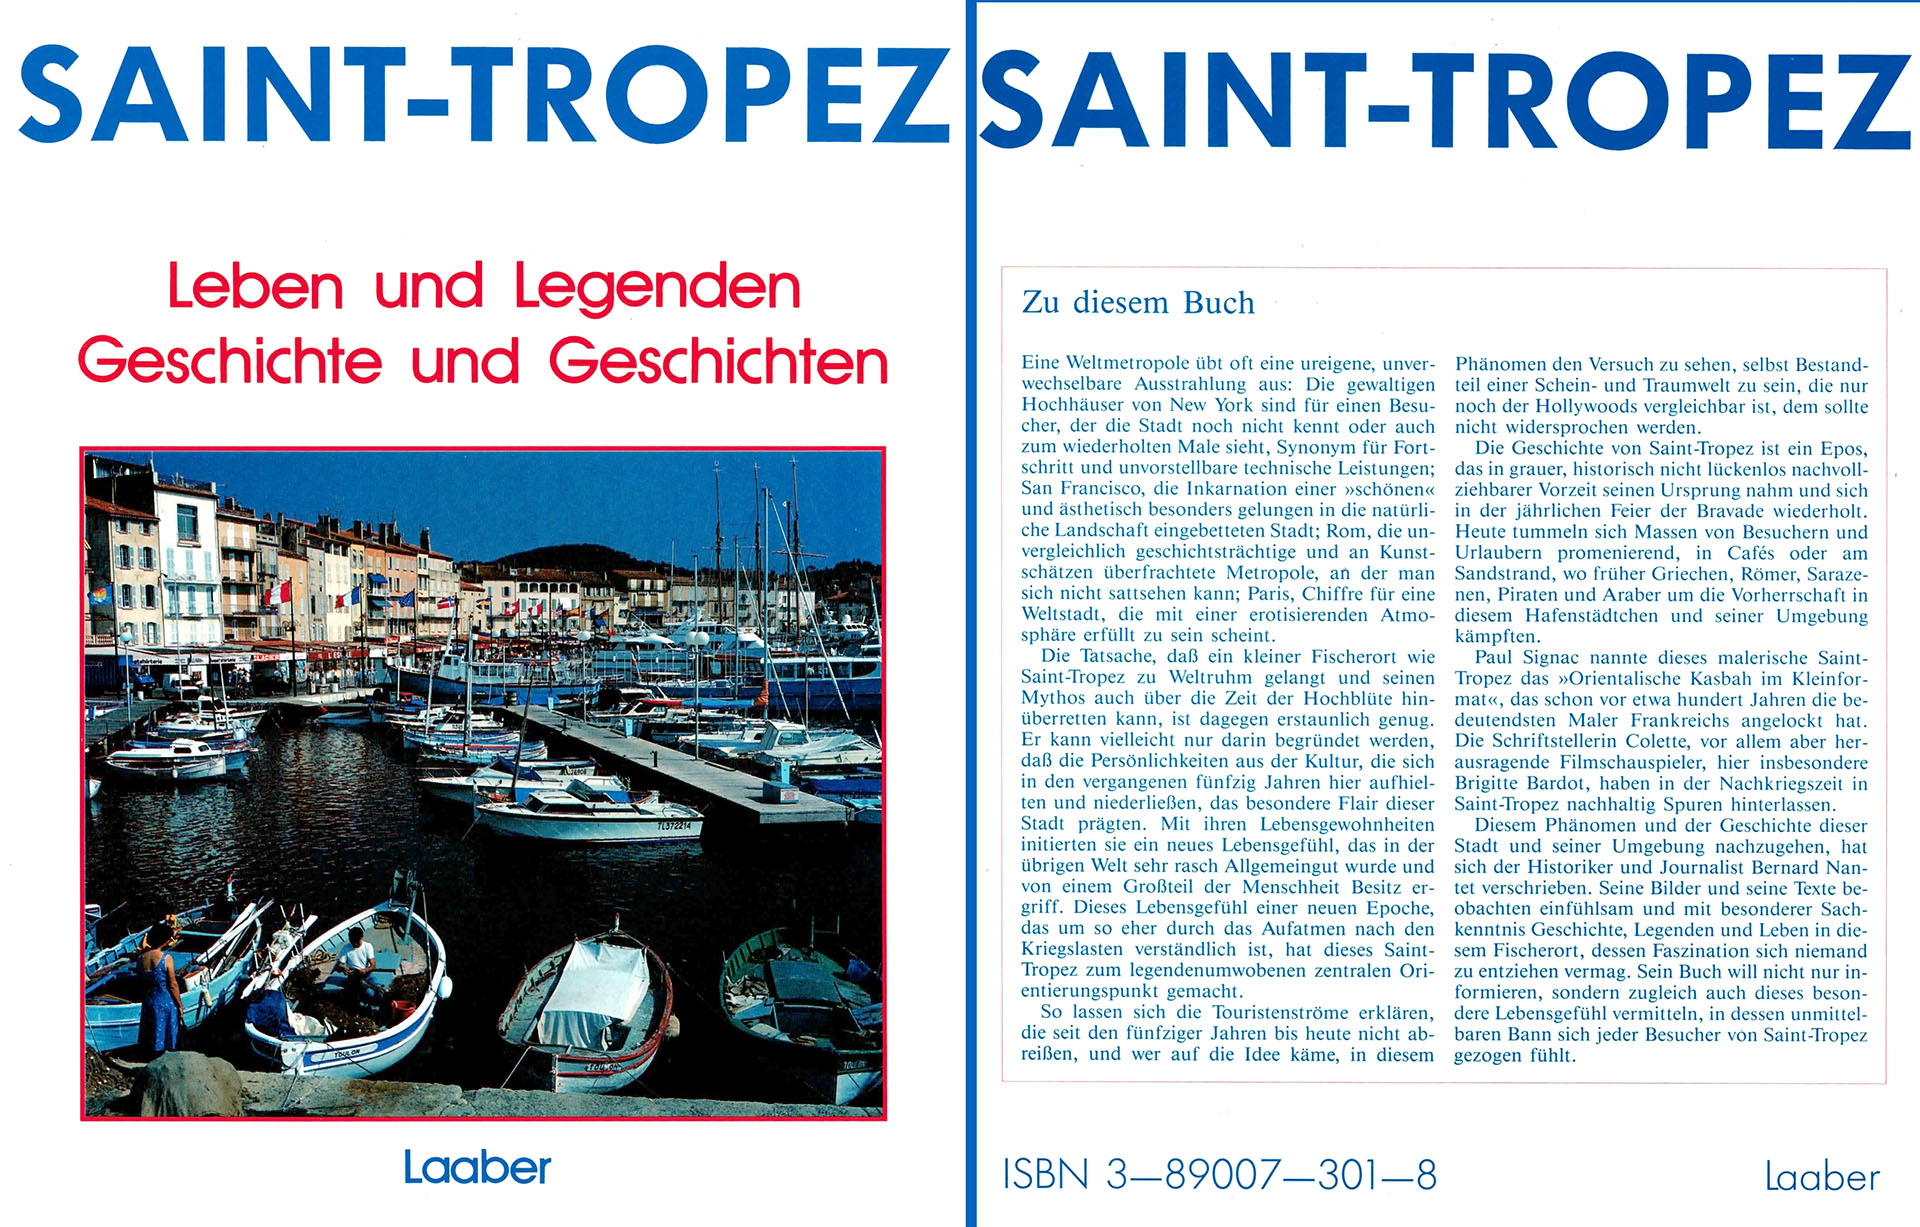 Saint-Tropez, Leben und Legenden, Geschichte und Geschichten - Nantet, Bernard